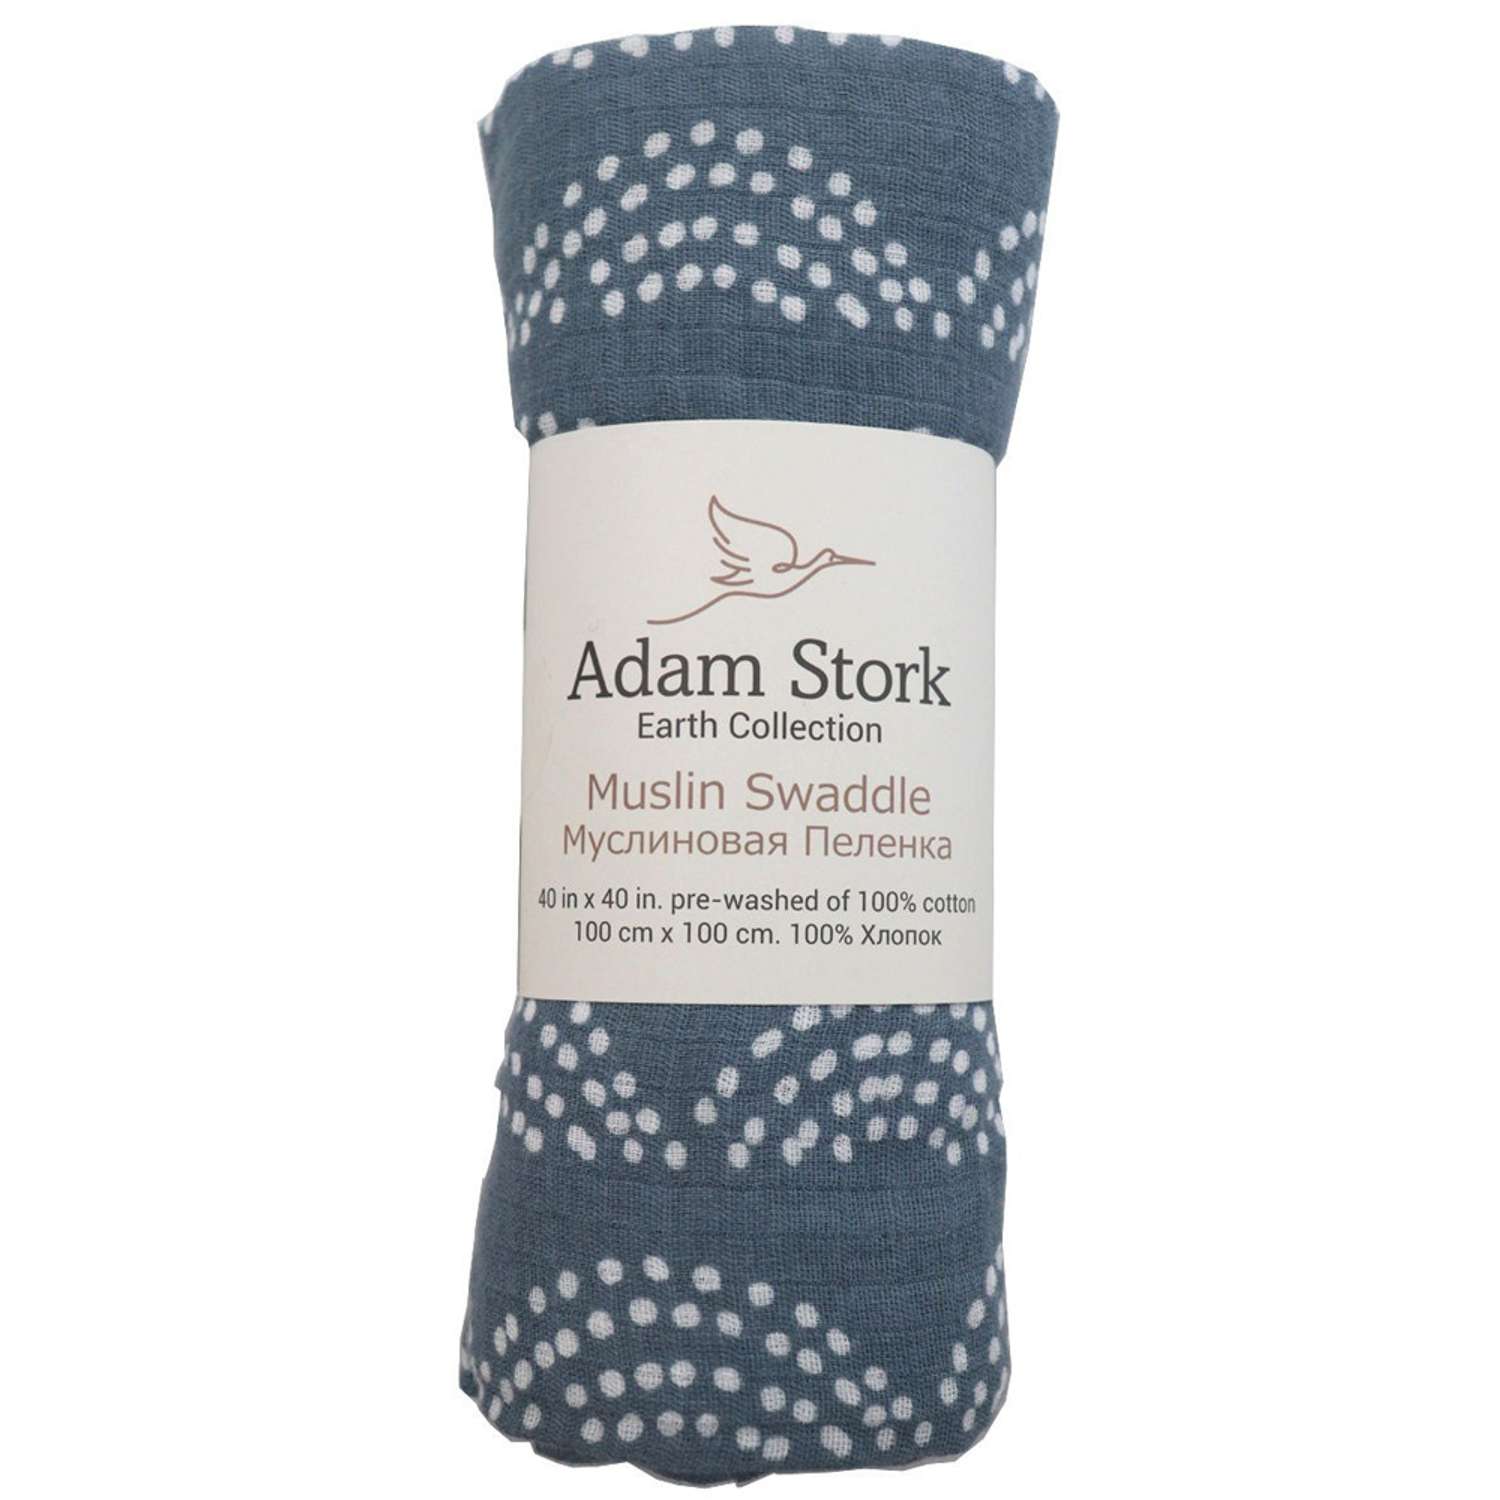 Пеленка муслиновая Adam Stork Rainbow 100*100 см - фото 6